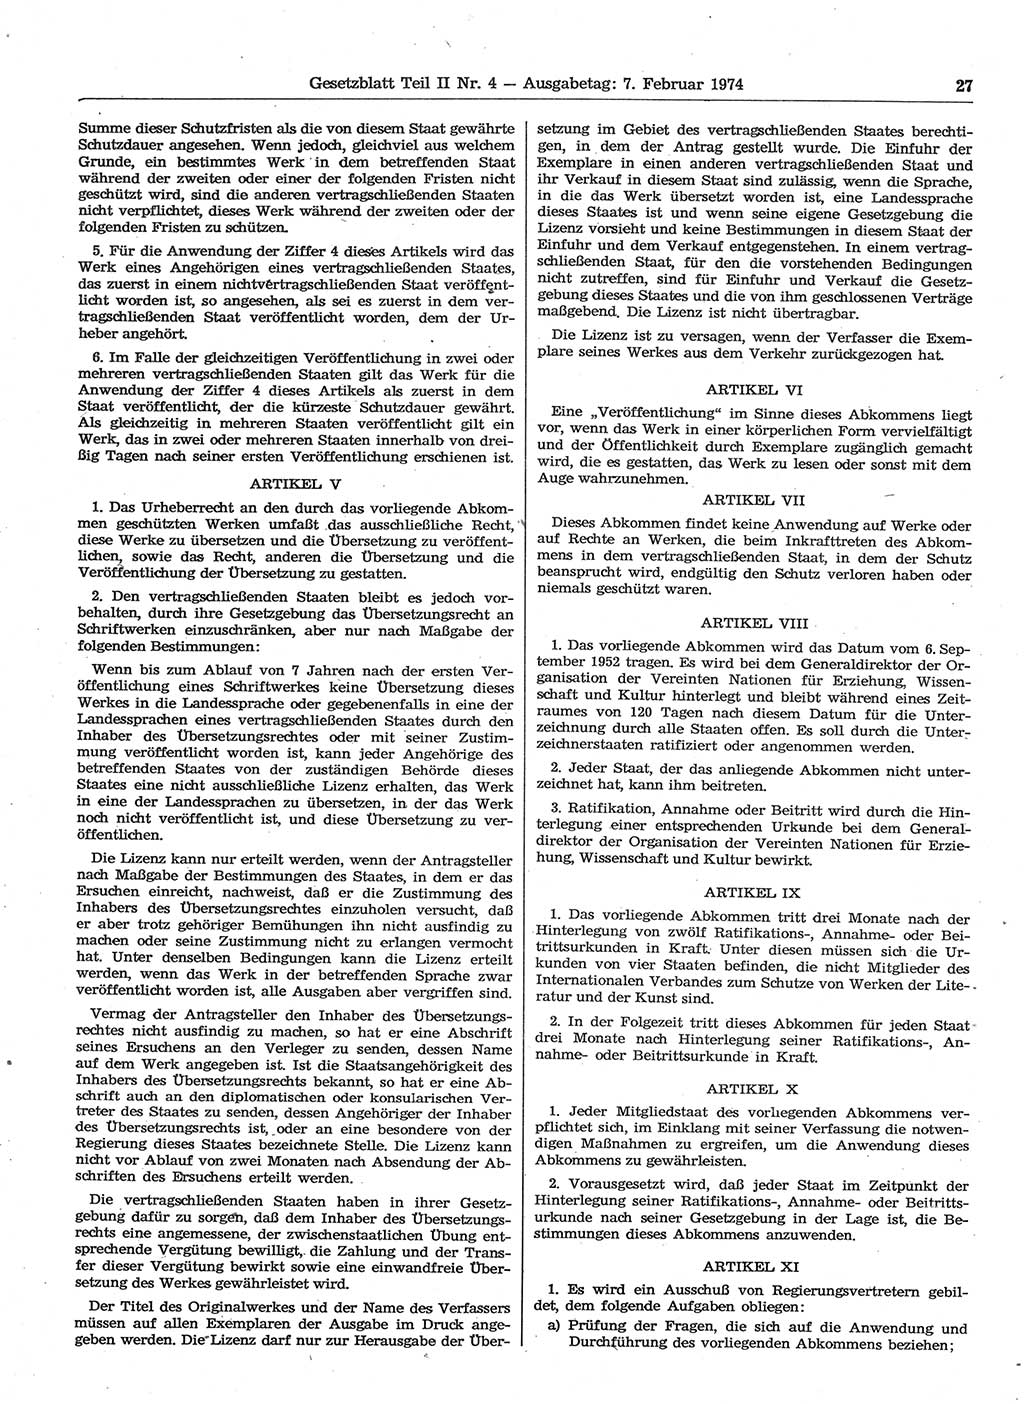 Gesetzblatt (GBl.) der Deutschen Demokratischen Republik (DDR) Teil ⅠⅠ 1974, Seite 27 (GBl. DDR ⅠⅠ 1974, S. 27)